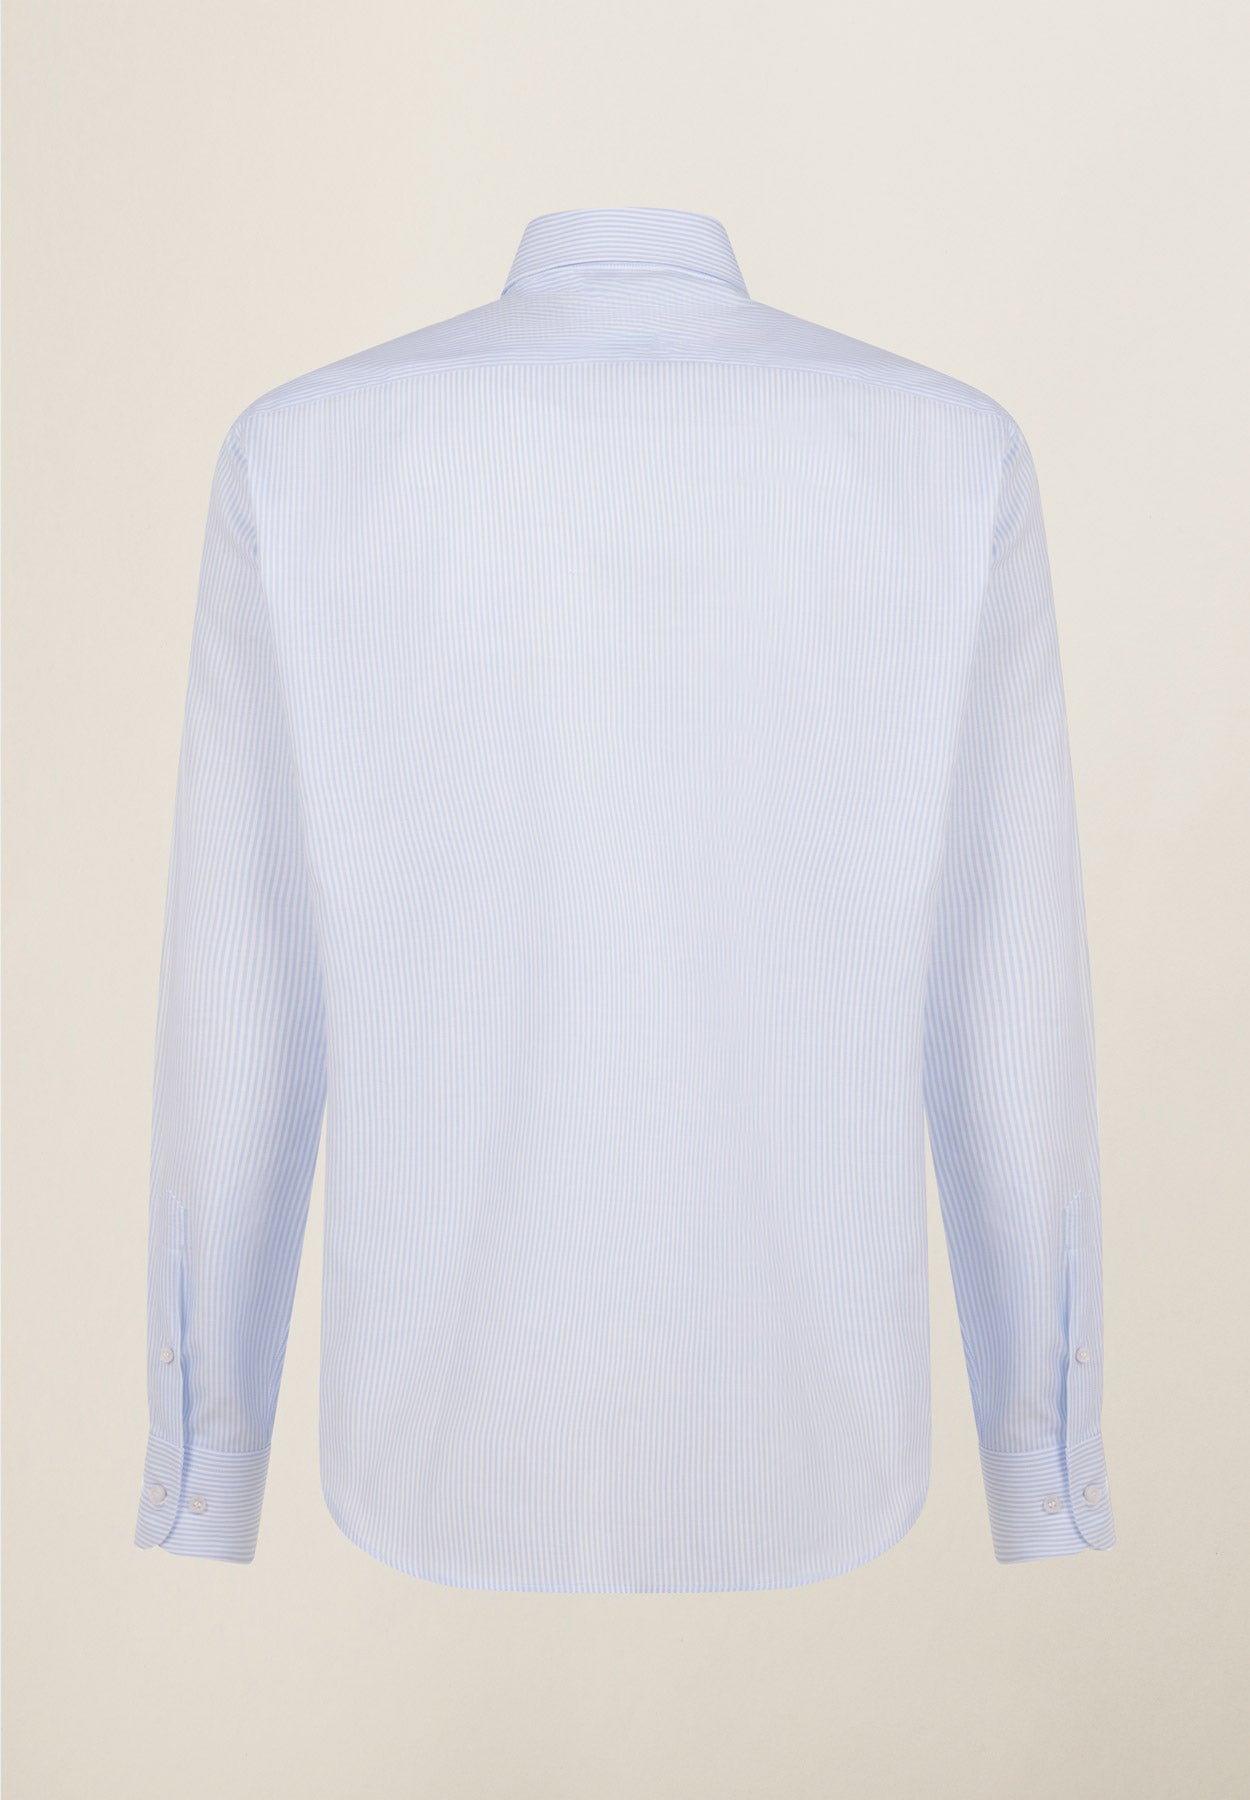 Hellblau-weiß gestreiftes Baumwollhemd mit normaler Passform